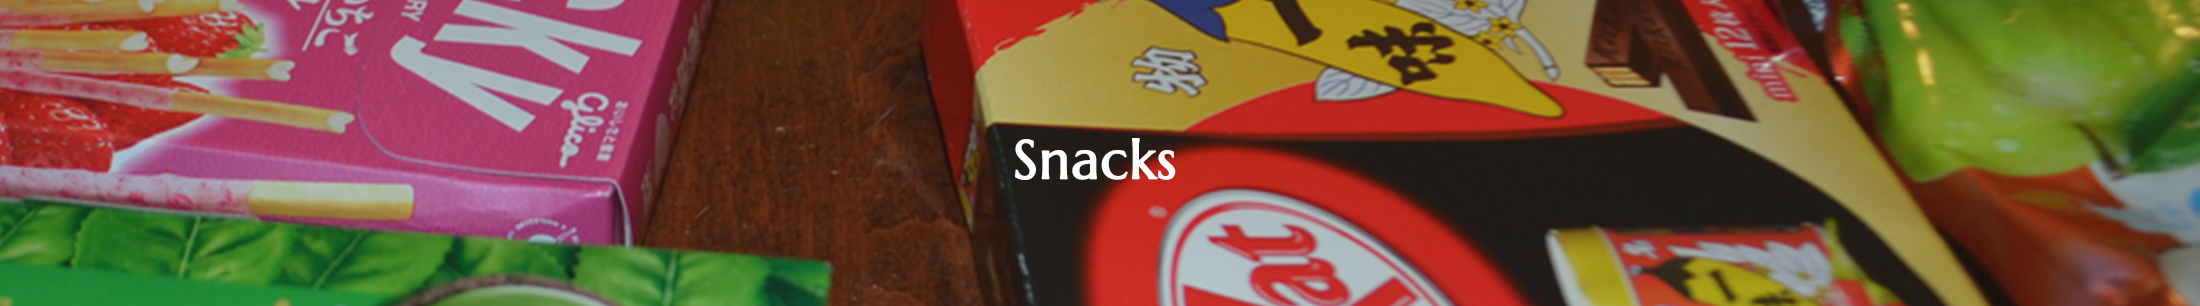 Seikatsu snacks